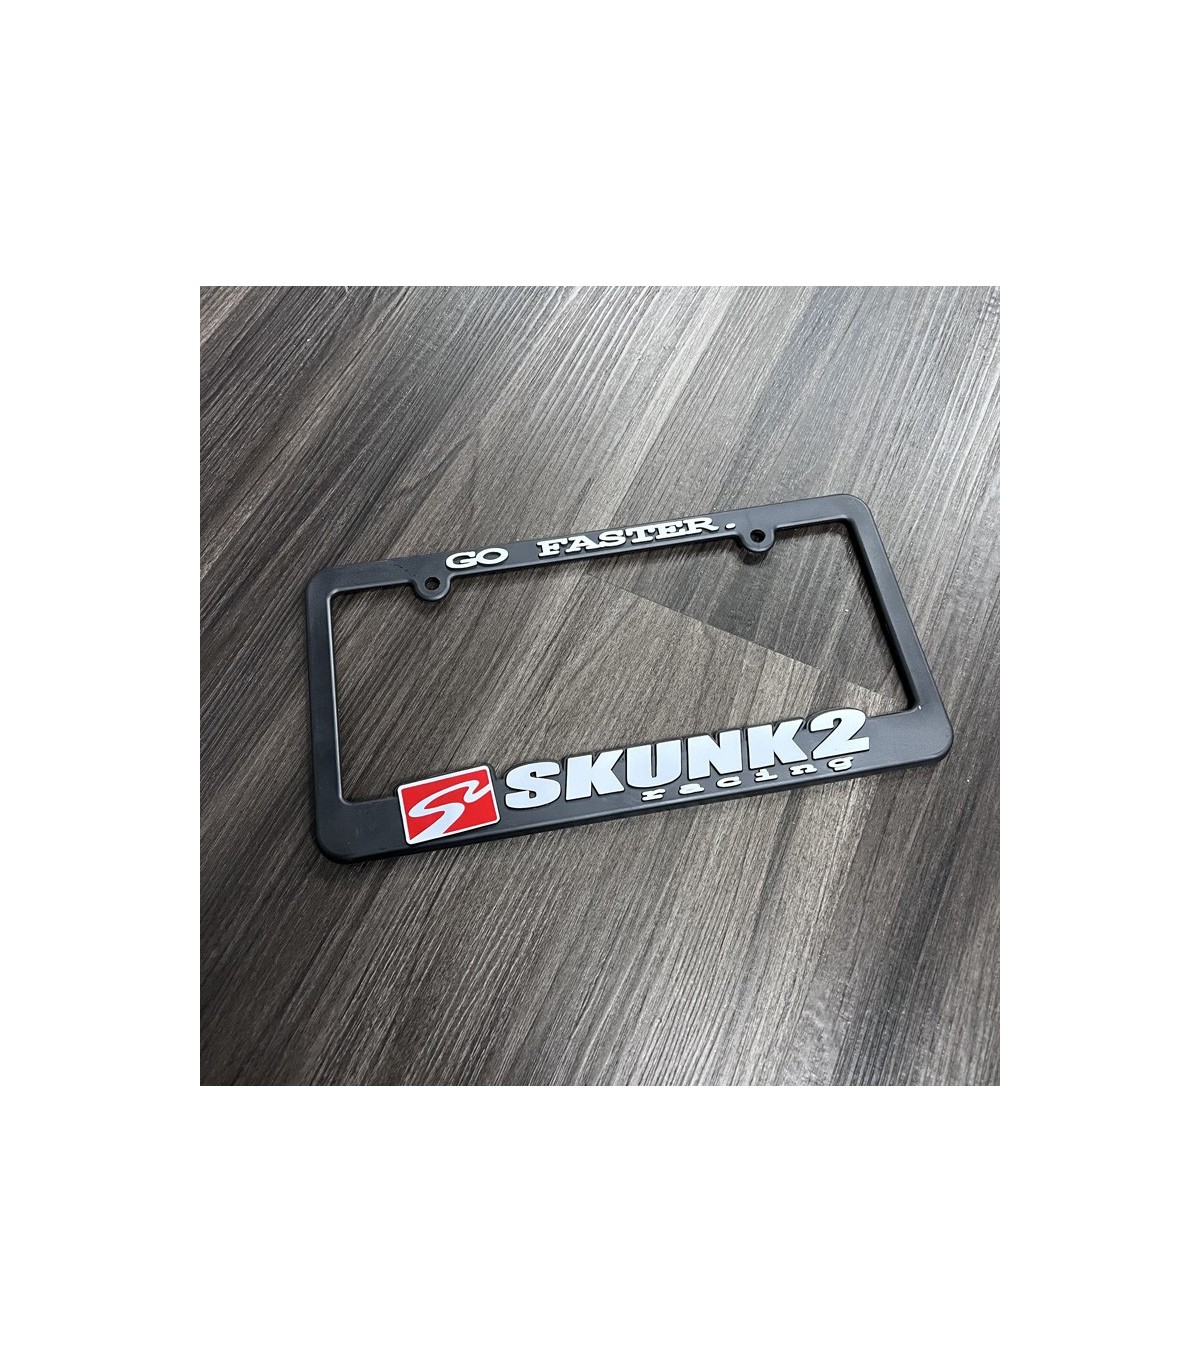 Skunk2 Go Faster License Plate Frame